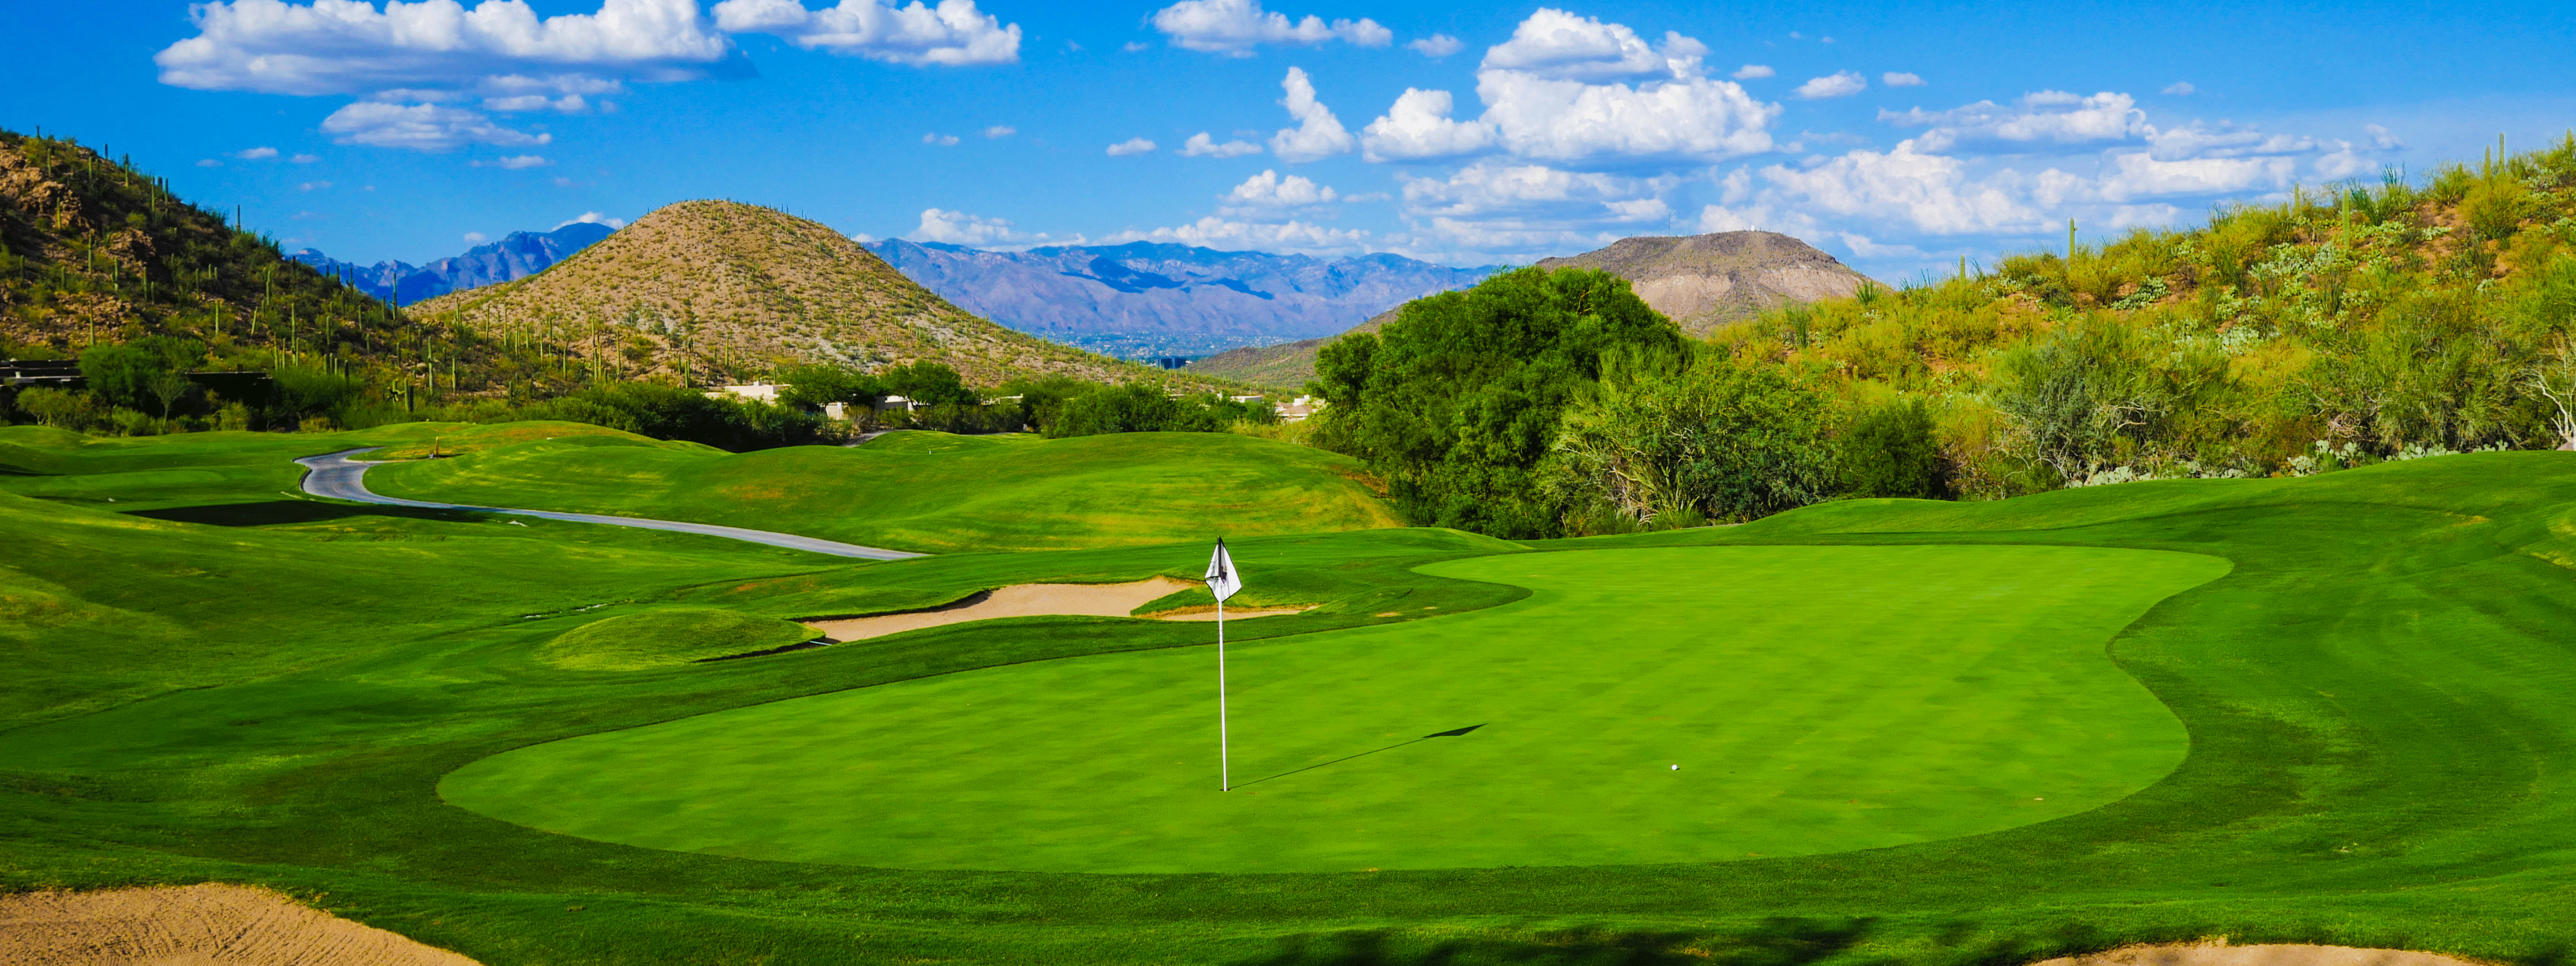 Starr Pass Golf Club at the JW Marriott Tucson Starr Pass.